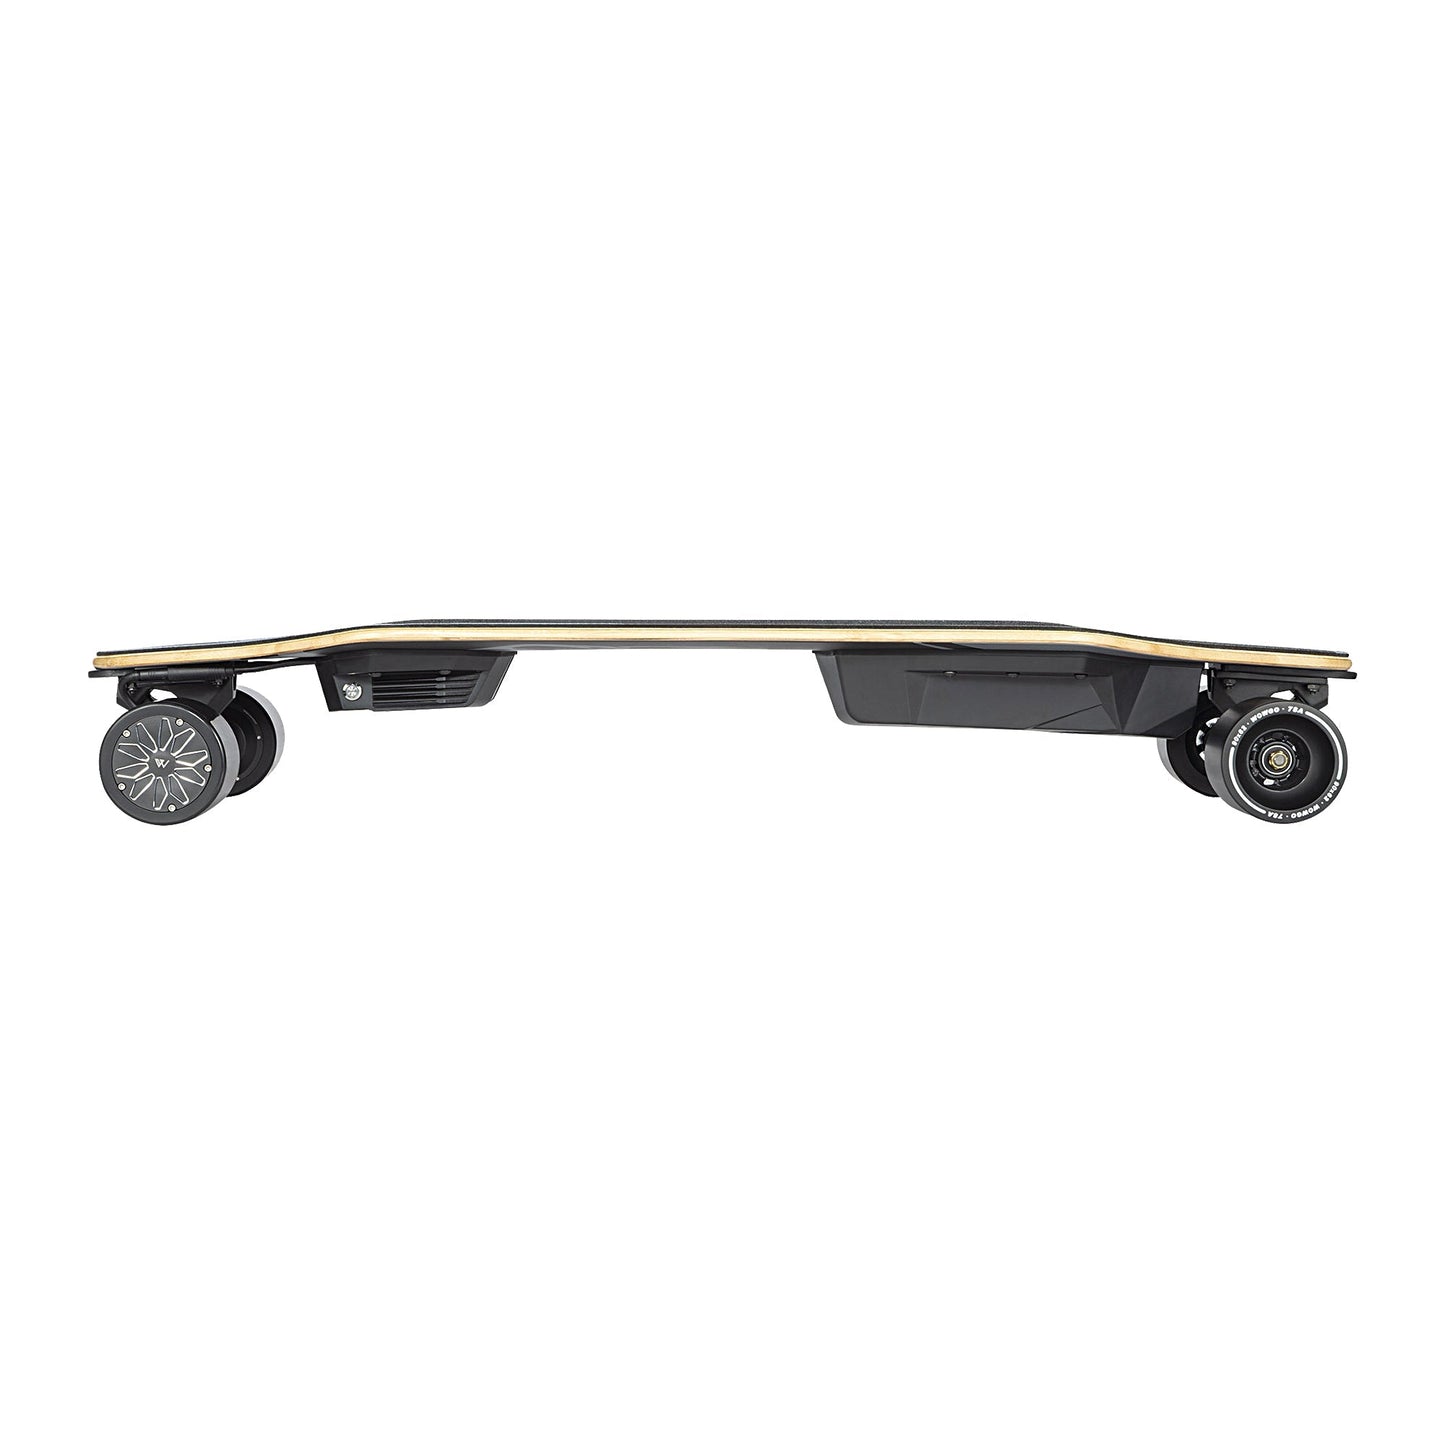 WowGo Pioneer 4 Electric Skateboard & Longboard